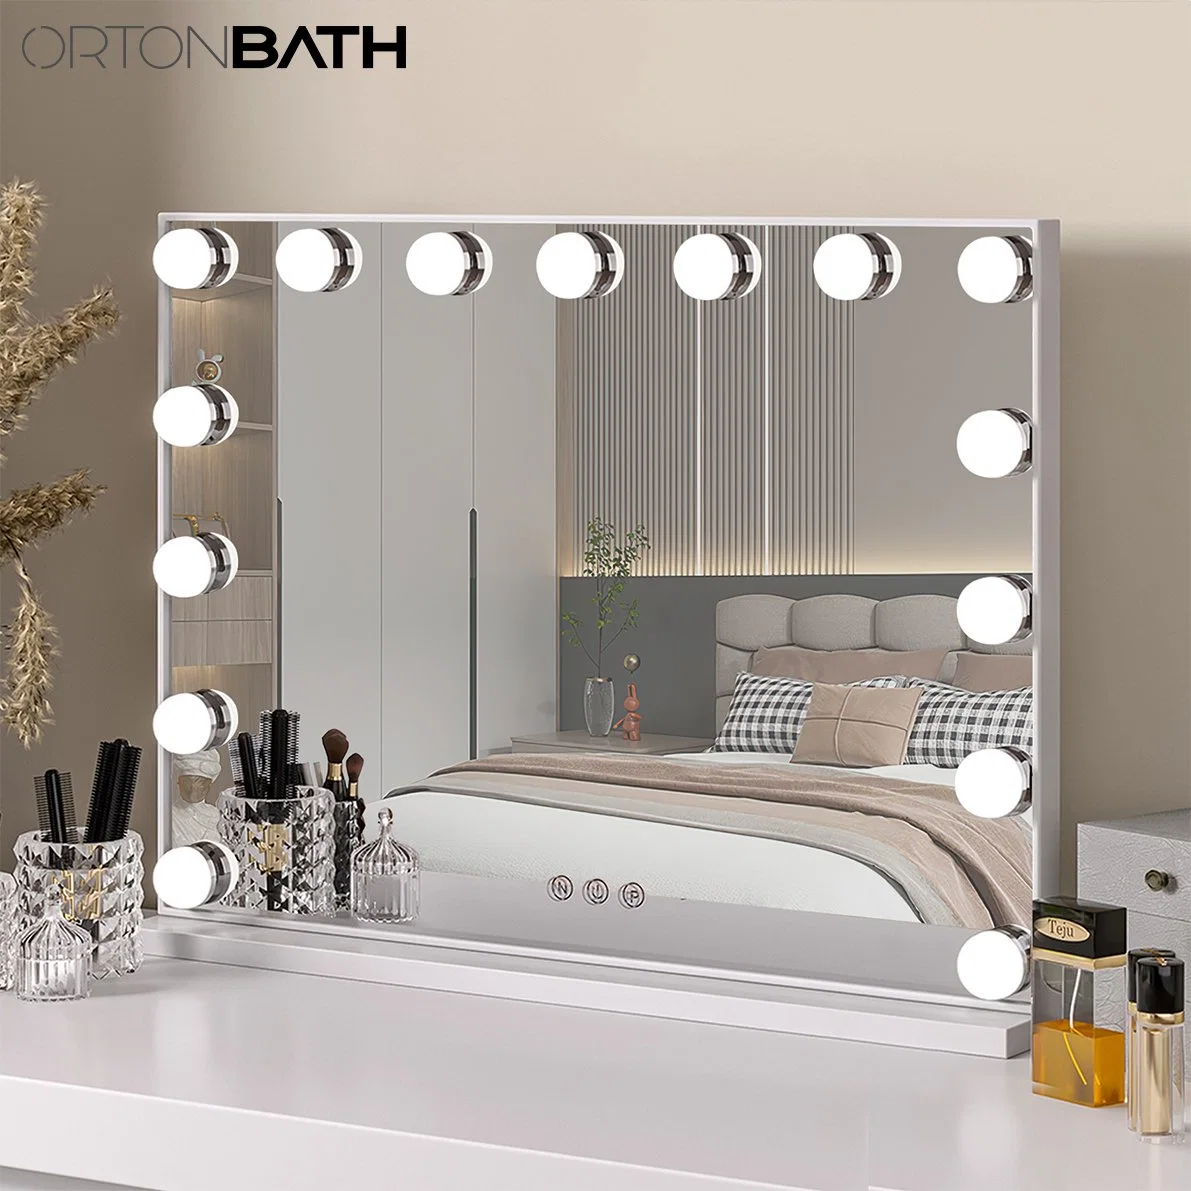 Ortonbath Hollywood Kosmetikspiegel mit dimmbaren LED-Leuchten 3 Beleuchtung Modi 2in1 großer beleuchteter Make-up Spiegel für Schreibtisch und Wand